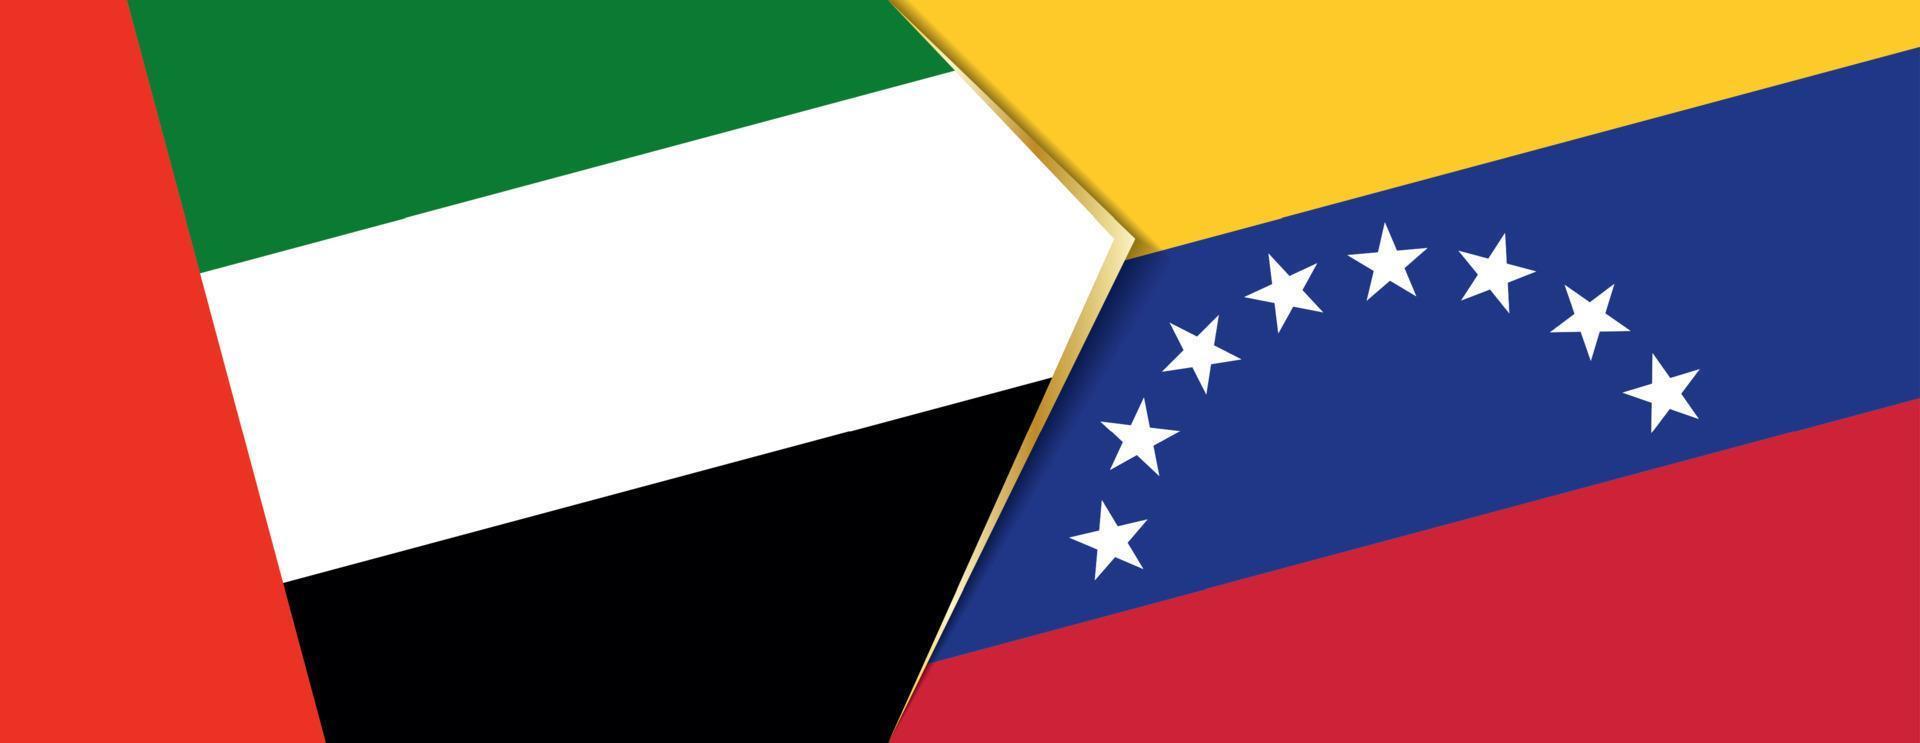 uni arabe émirats et Venezuela drapeaux, deux vecteur drapeaux.